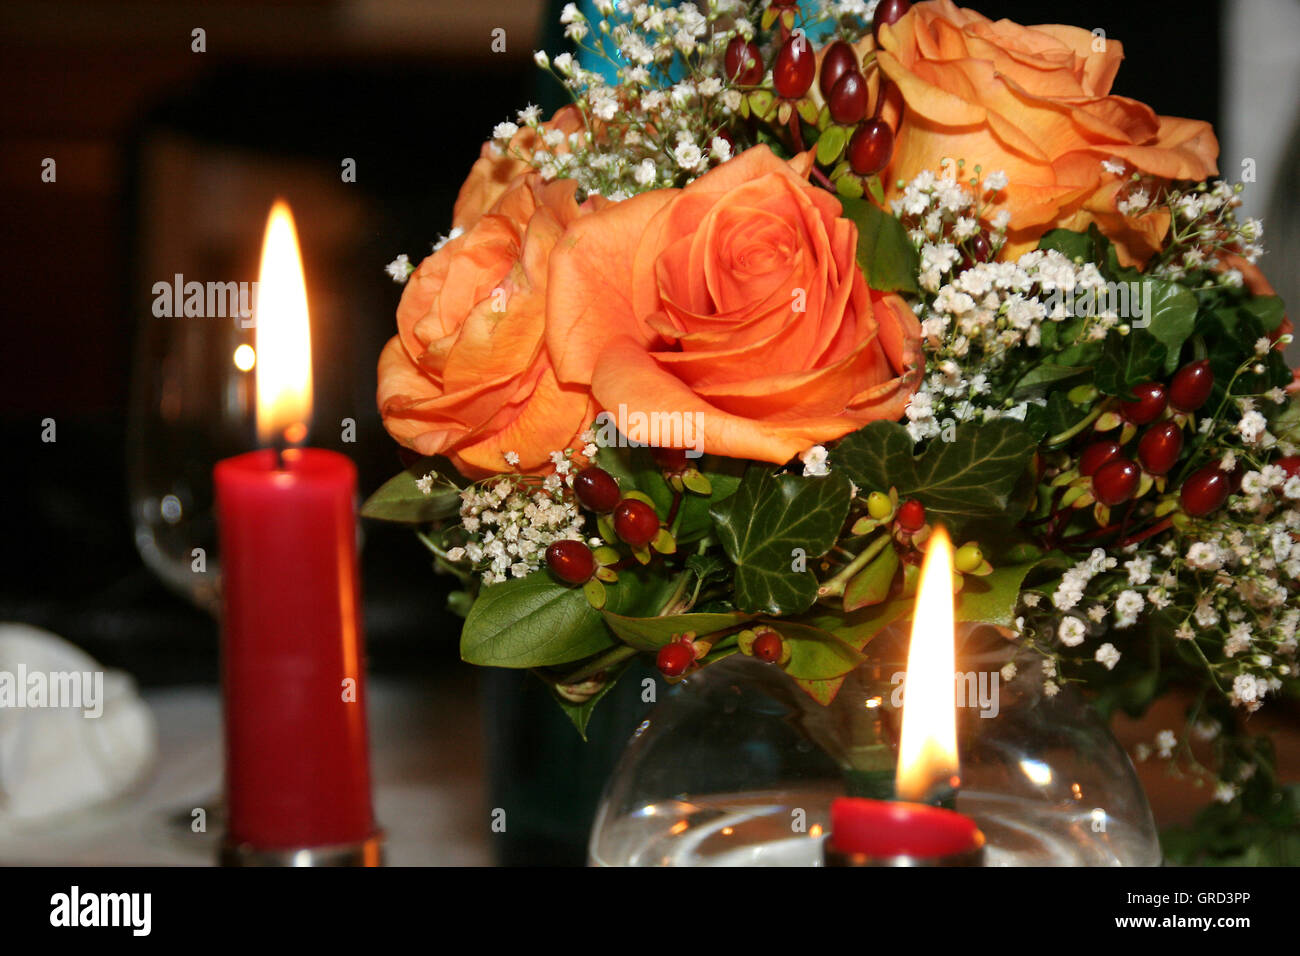 Bridal Bouquet Stock Photo